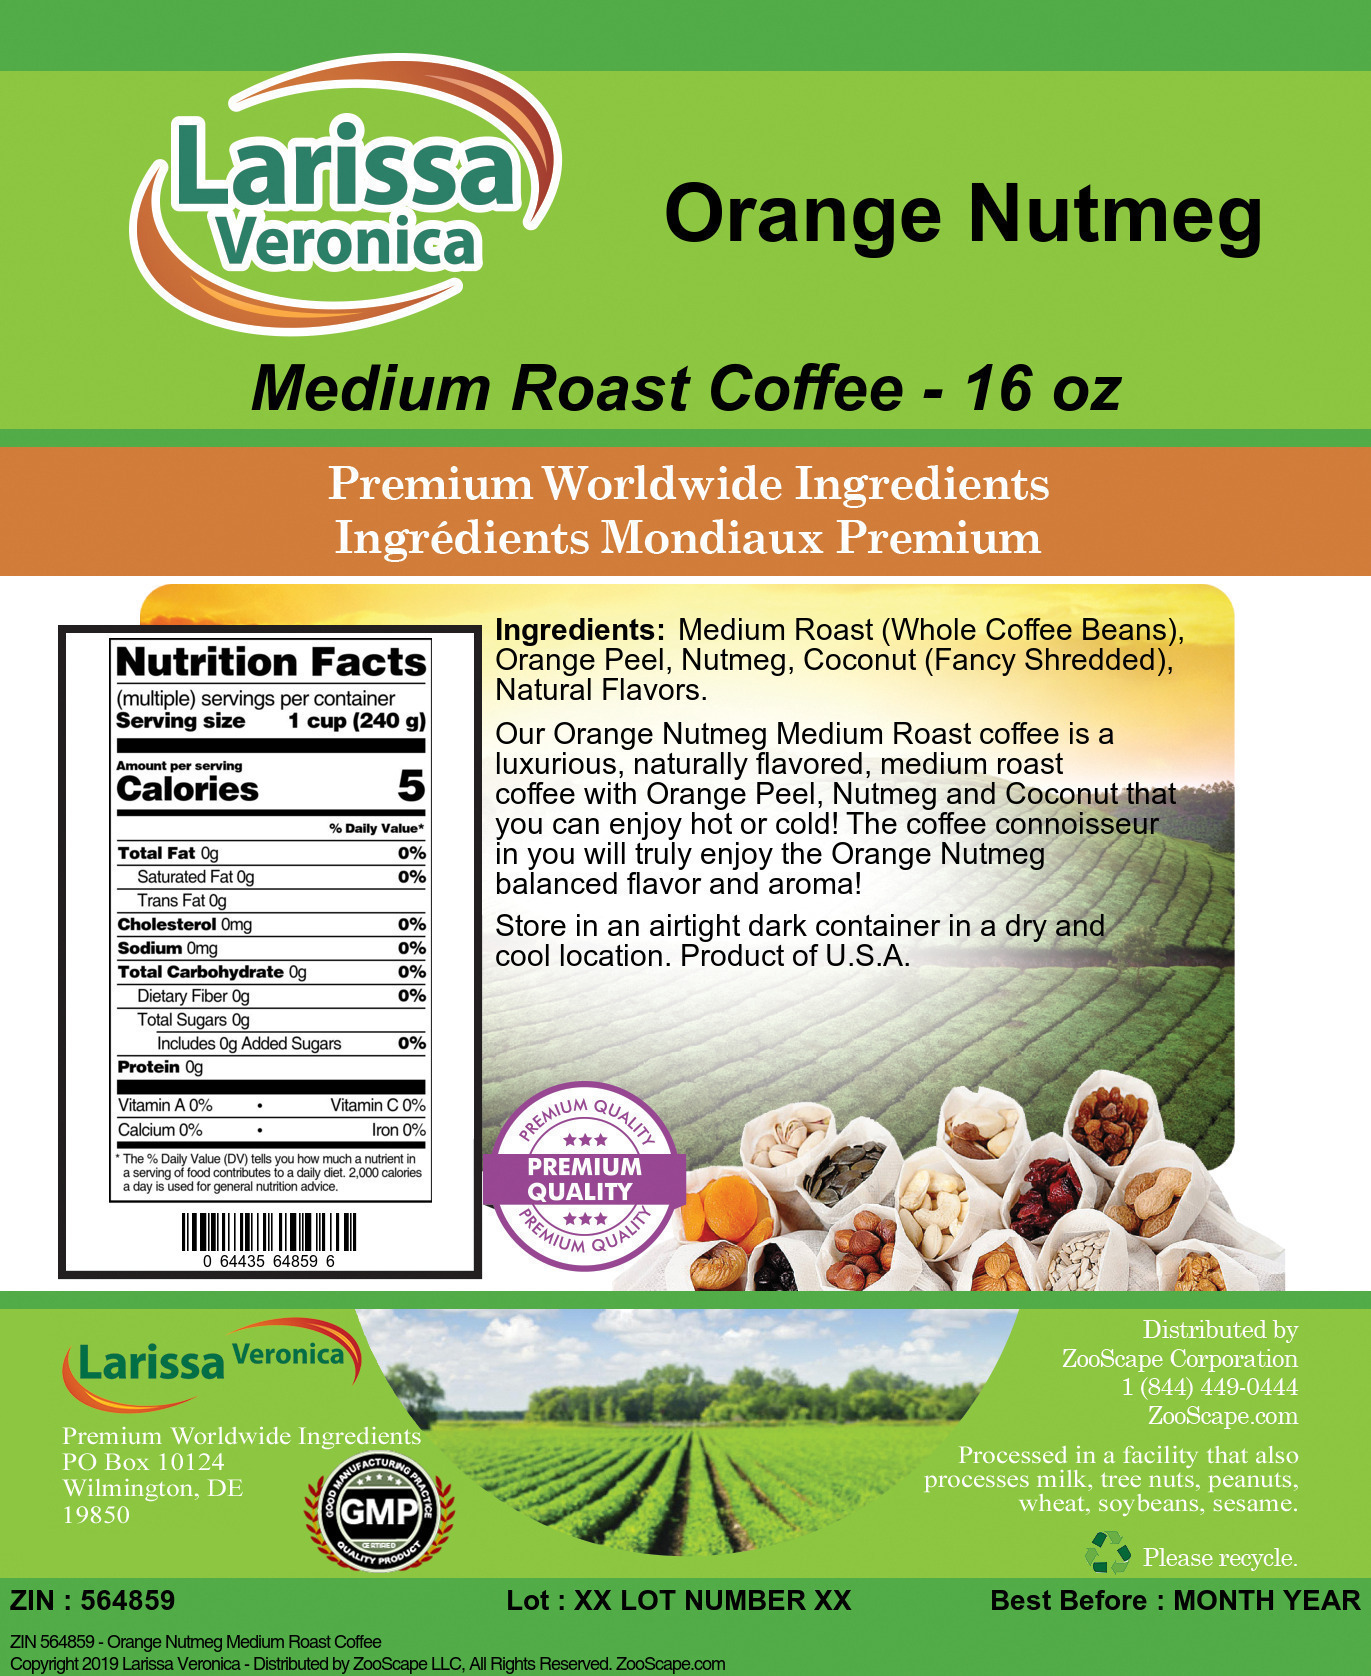 Orange Nutmeg Medium Roast Coffee - Label